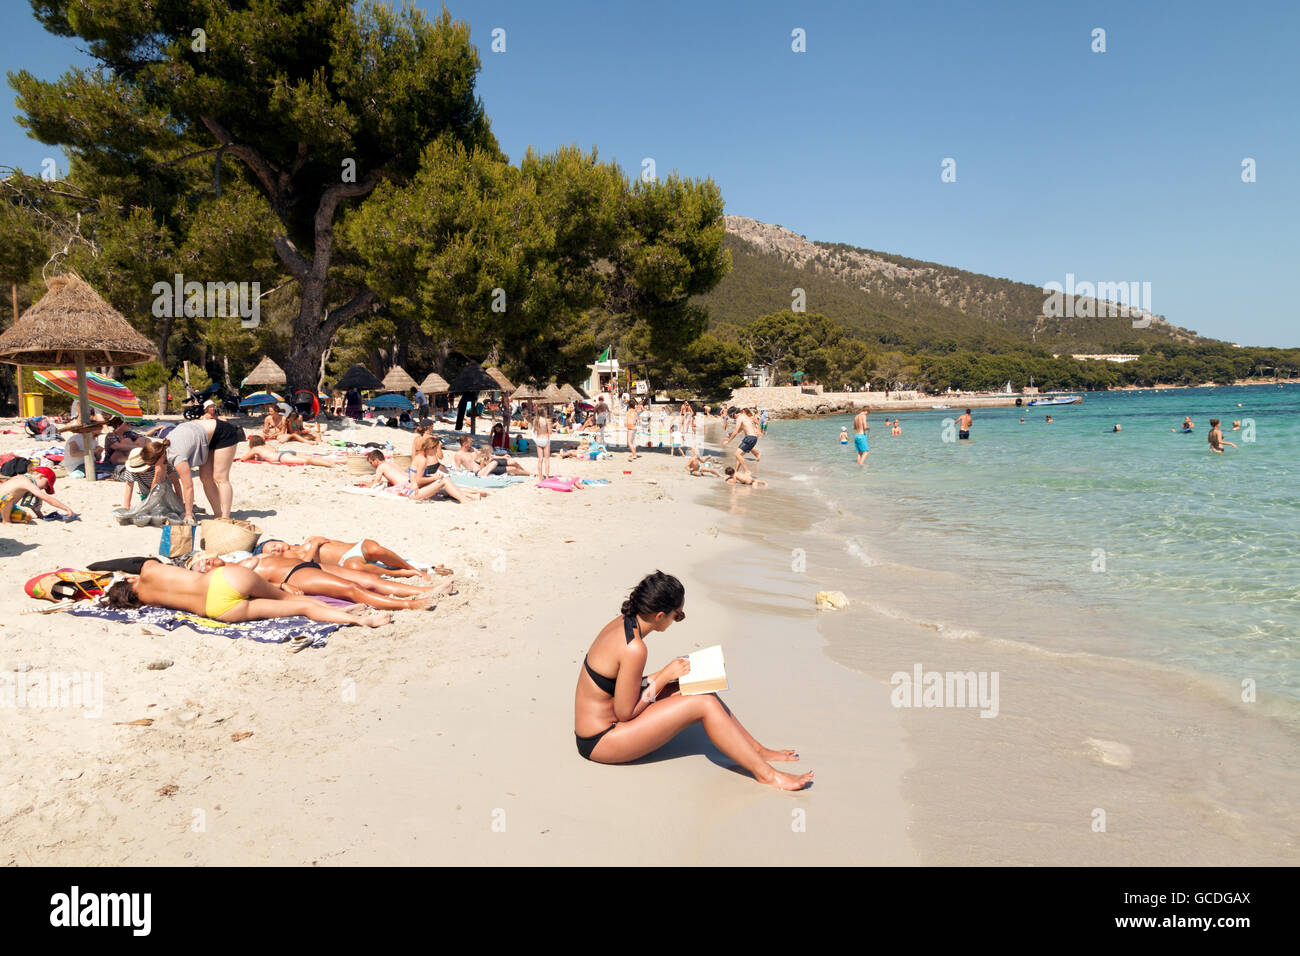 Seule femme lisant un livre sur une plage de vacances, Cala Formentor, Majorque Îles Baléares l'Europe Banque D'Images